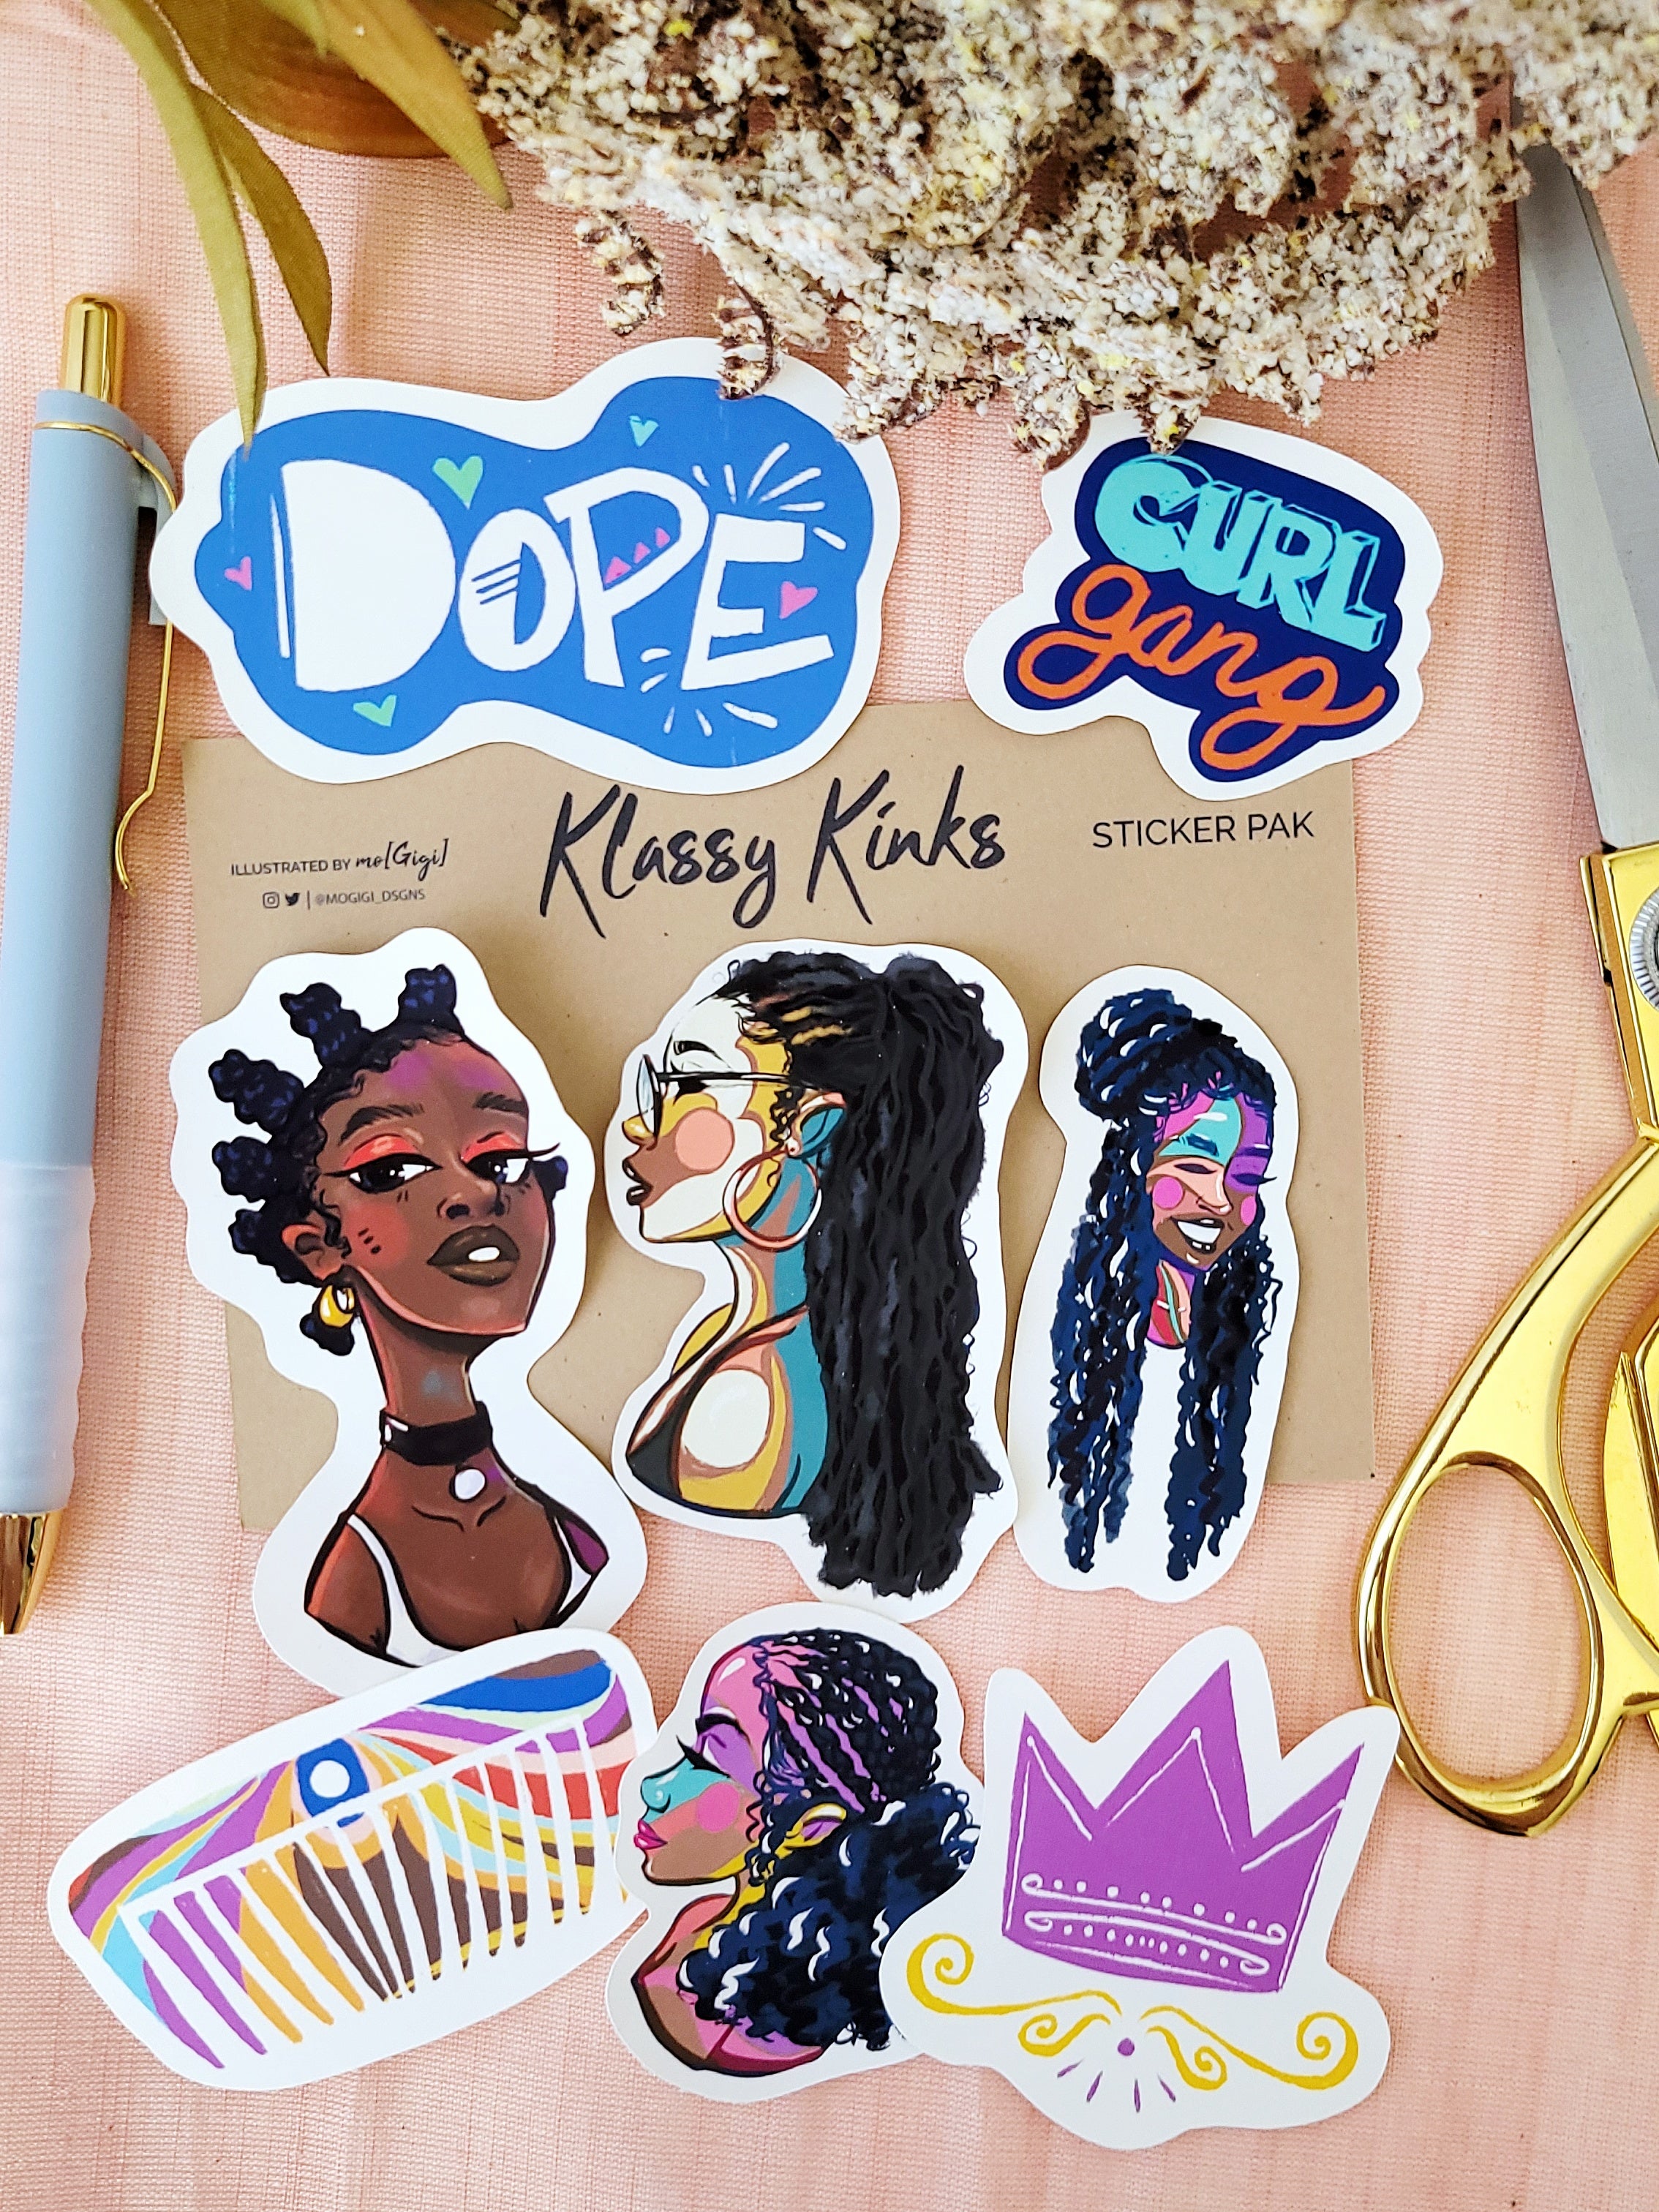 Black Women Sticker Pack, black girl magic, melanin queen, Classy Kinks Collection, Natural hair art, mogigi shop, Virginia based illustrator Gigi Moore